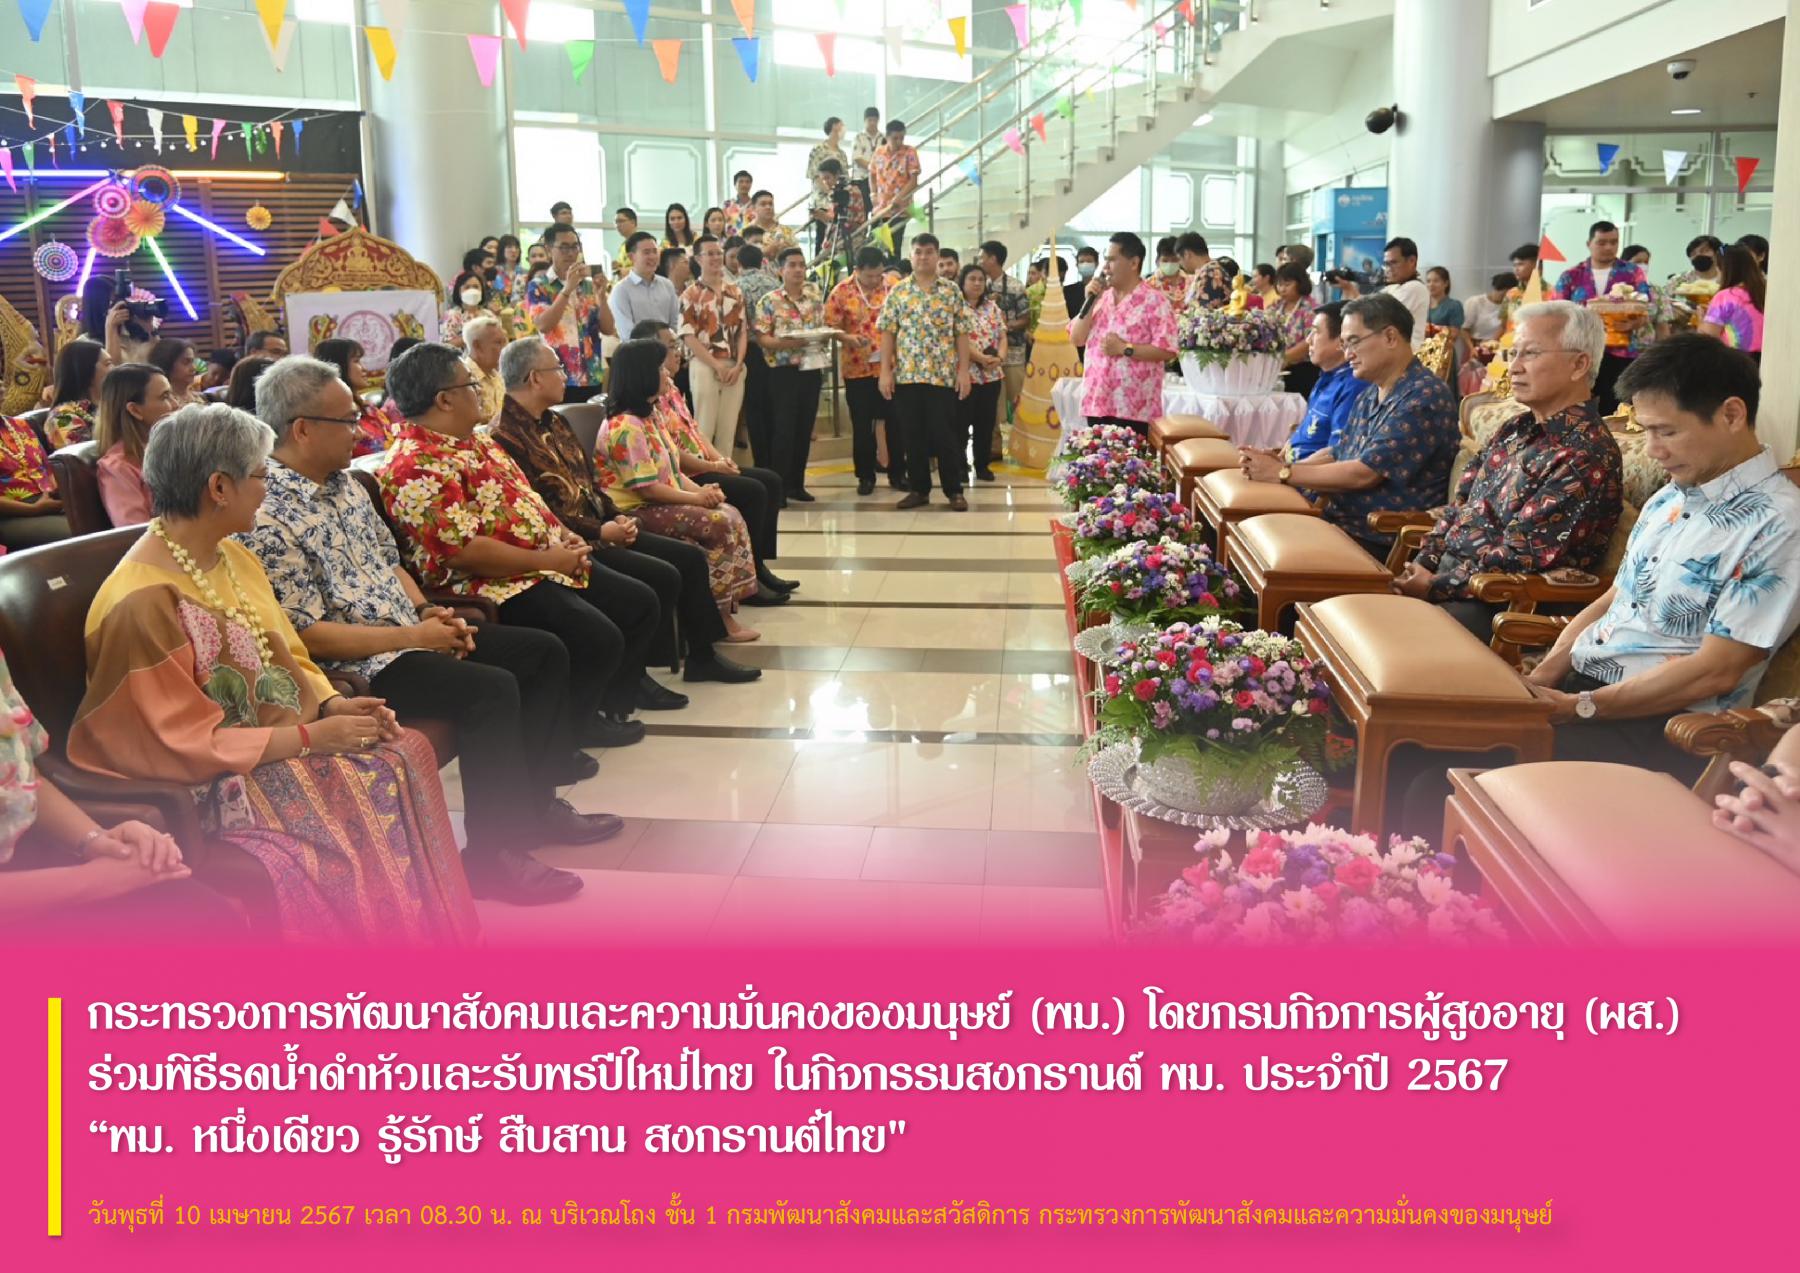 กระทรวงการพัฒนาสังคมและความมั่นคงของมนุษย์ (พม.) โดยกรมกิจการผู้สูงอายุ (ผส.) ร่วมพิธีรดน้ำดำหัวและรับพรปีใหม่ไทย ในกิจกรรมสงกรานต์ พม. ประจำปี 2567 “พม. หนึ่งเดียว รู้รักษ์ สืบสาน สงกรานต์ไทย"